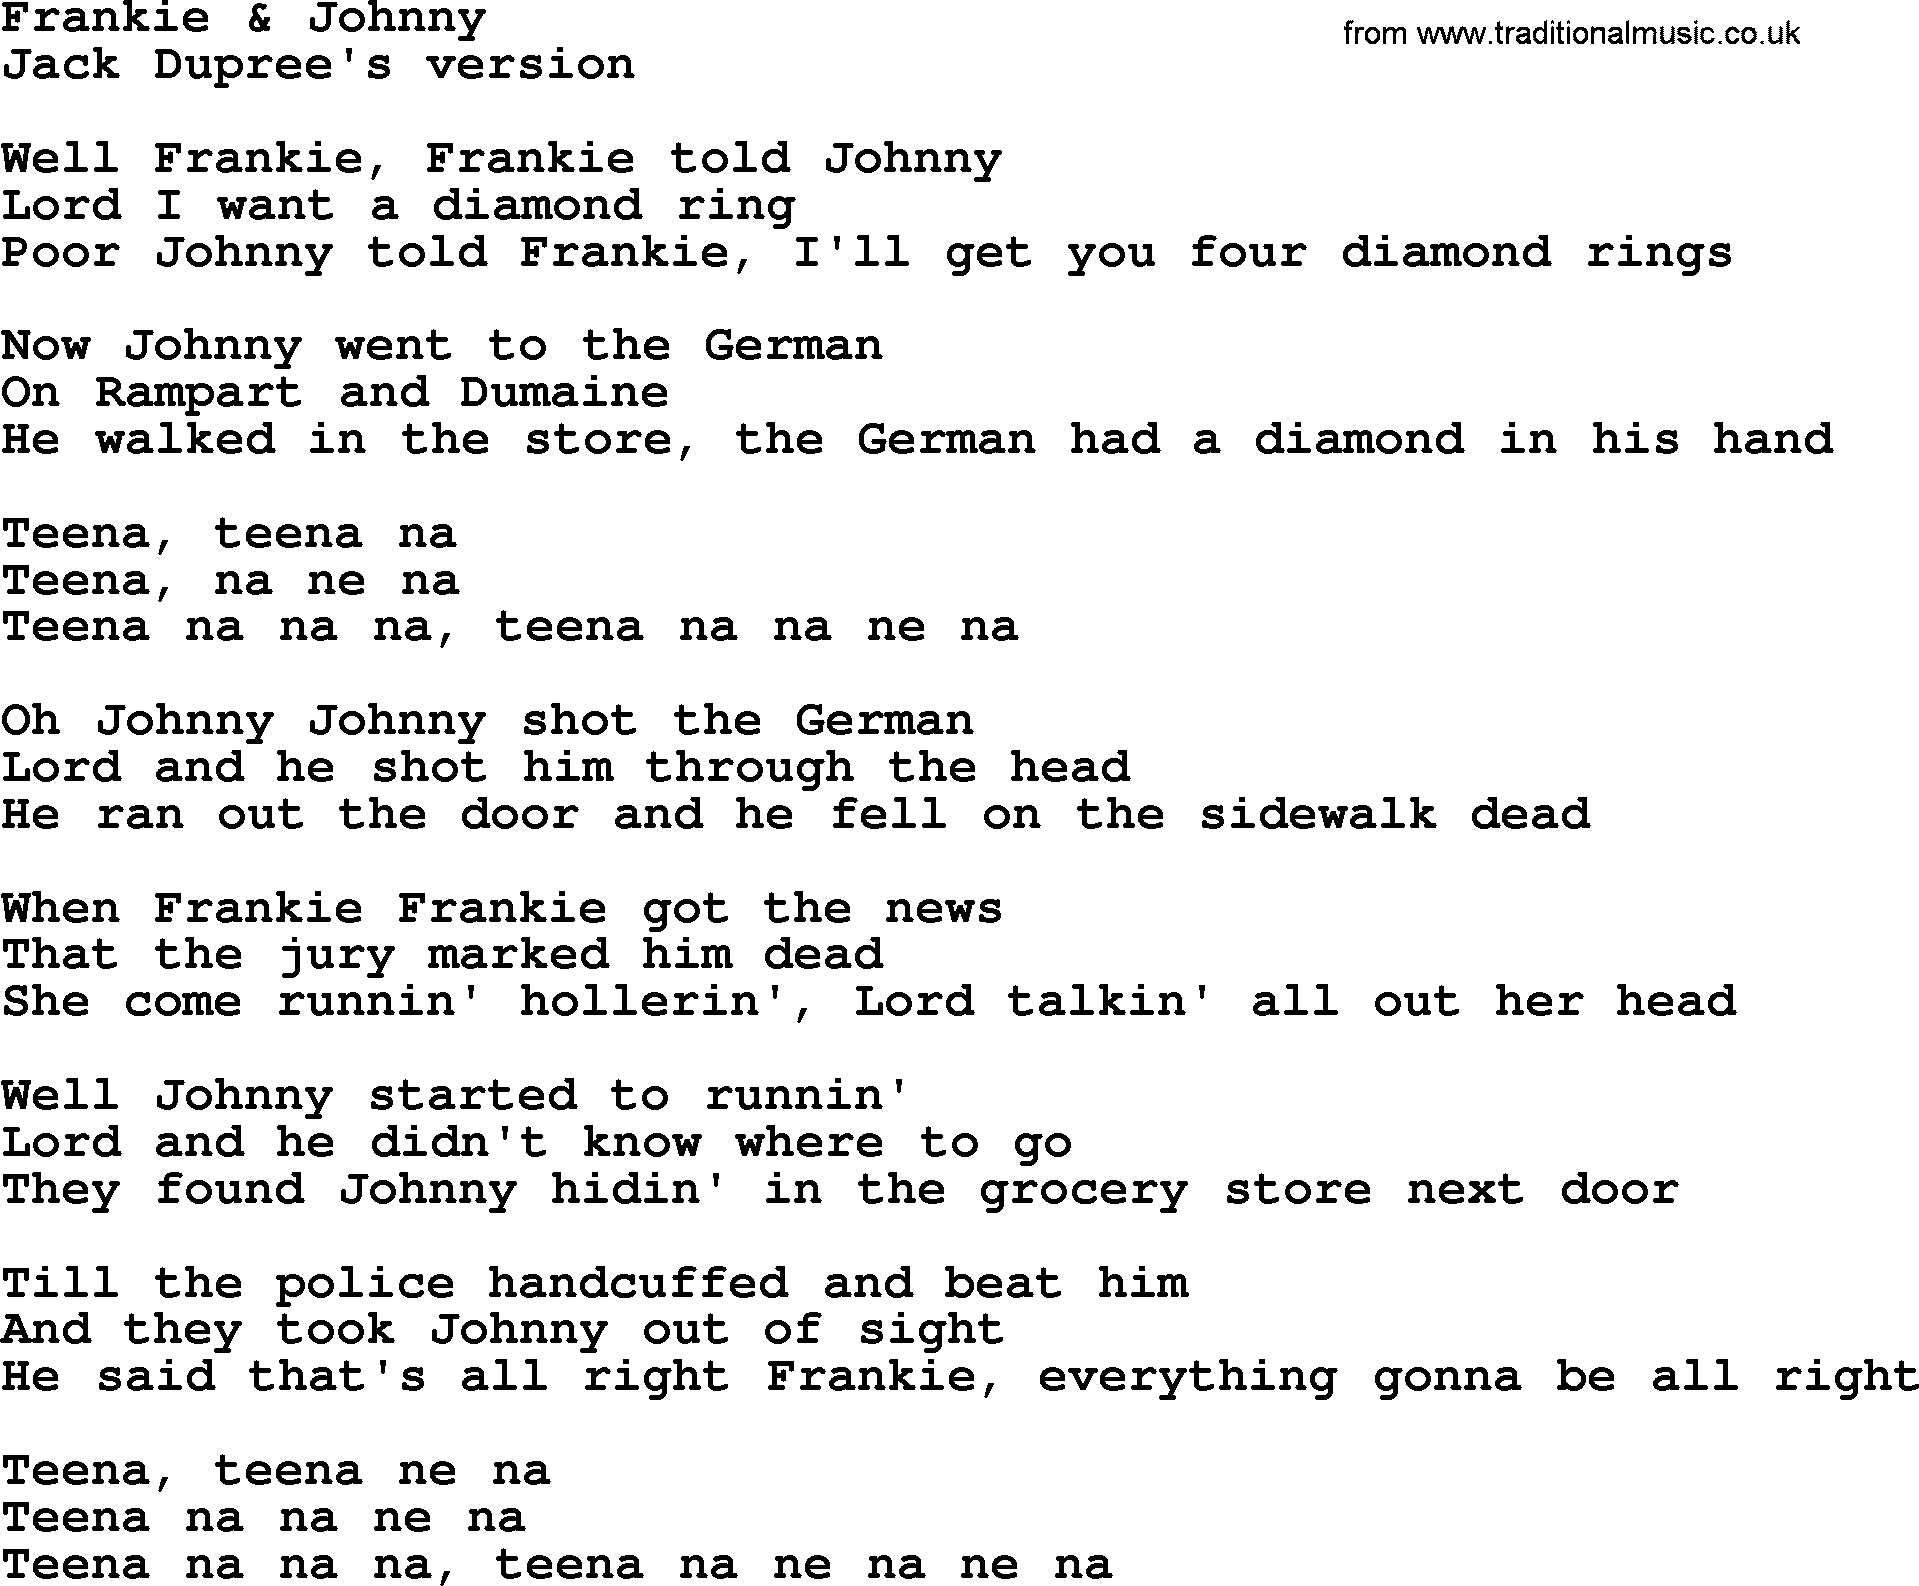 The Byrds song Frankie & Johnny, lyrics